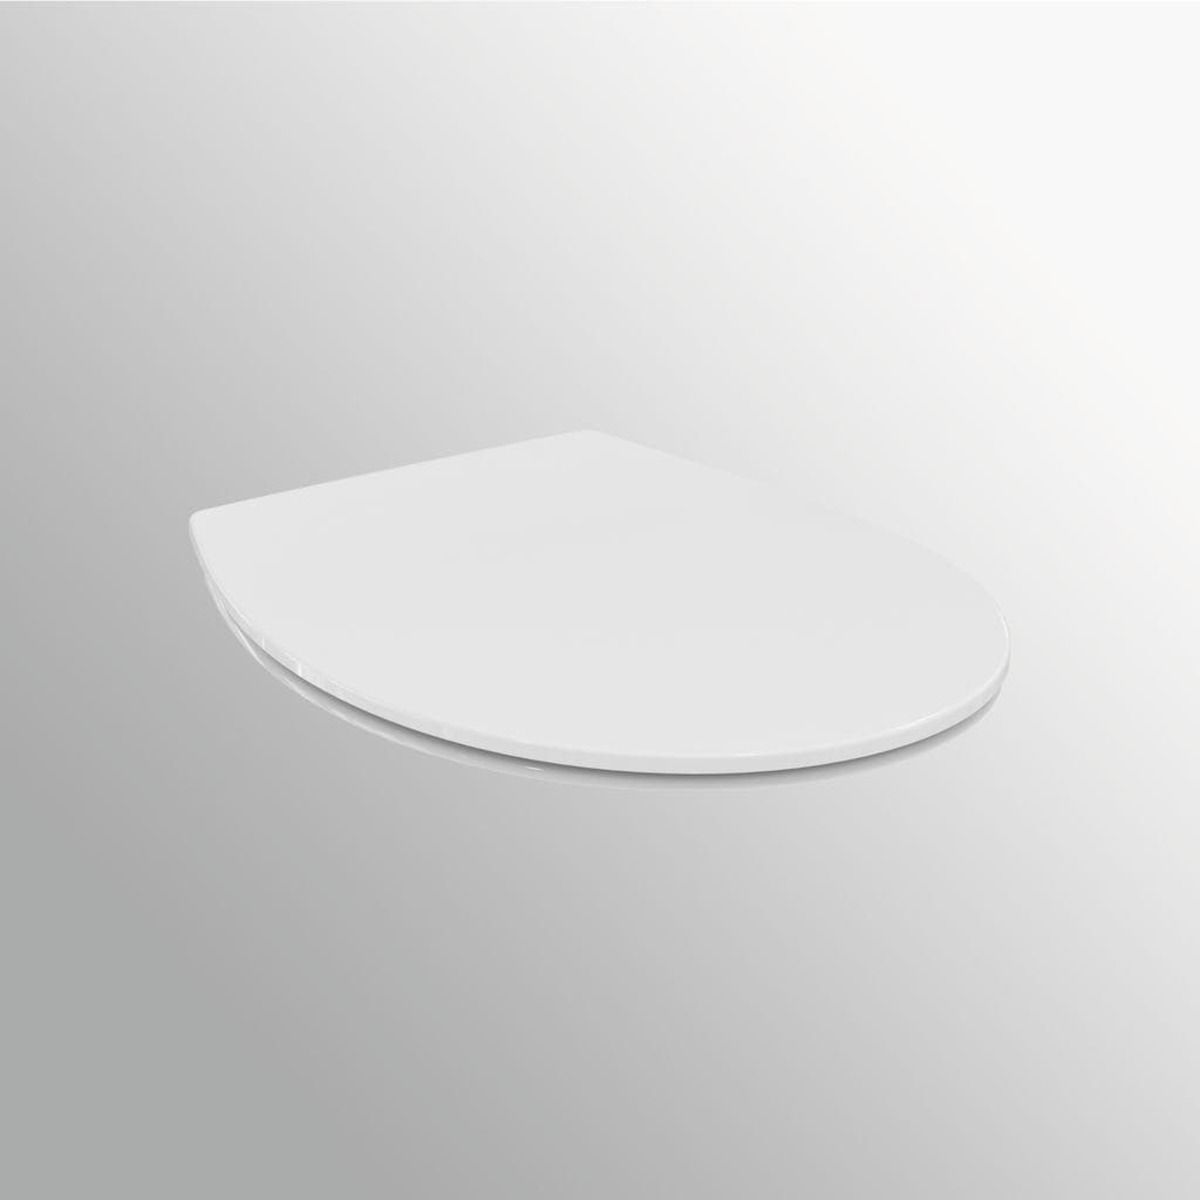 Wc prkénko Ideal Standard Simplicity duroplast bílá E131701 - Siko - koupelny - kuchyně